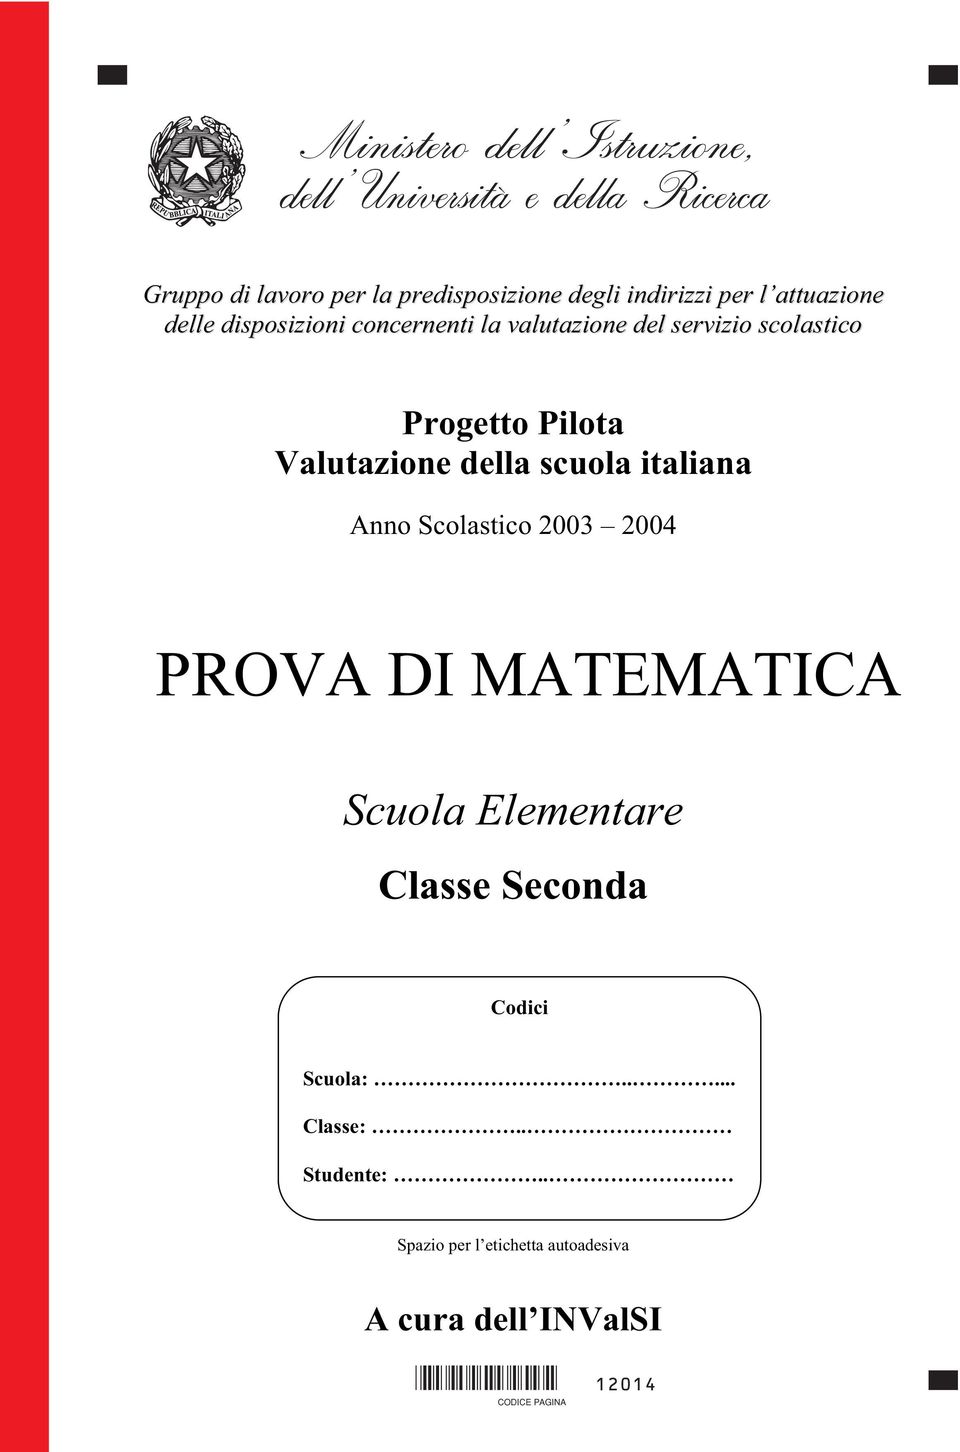 della scuola italiana Anno Scolastico 2003 2004 PROVA DI MATEMATICA Scuola Elementare Classe Seconda Codici